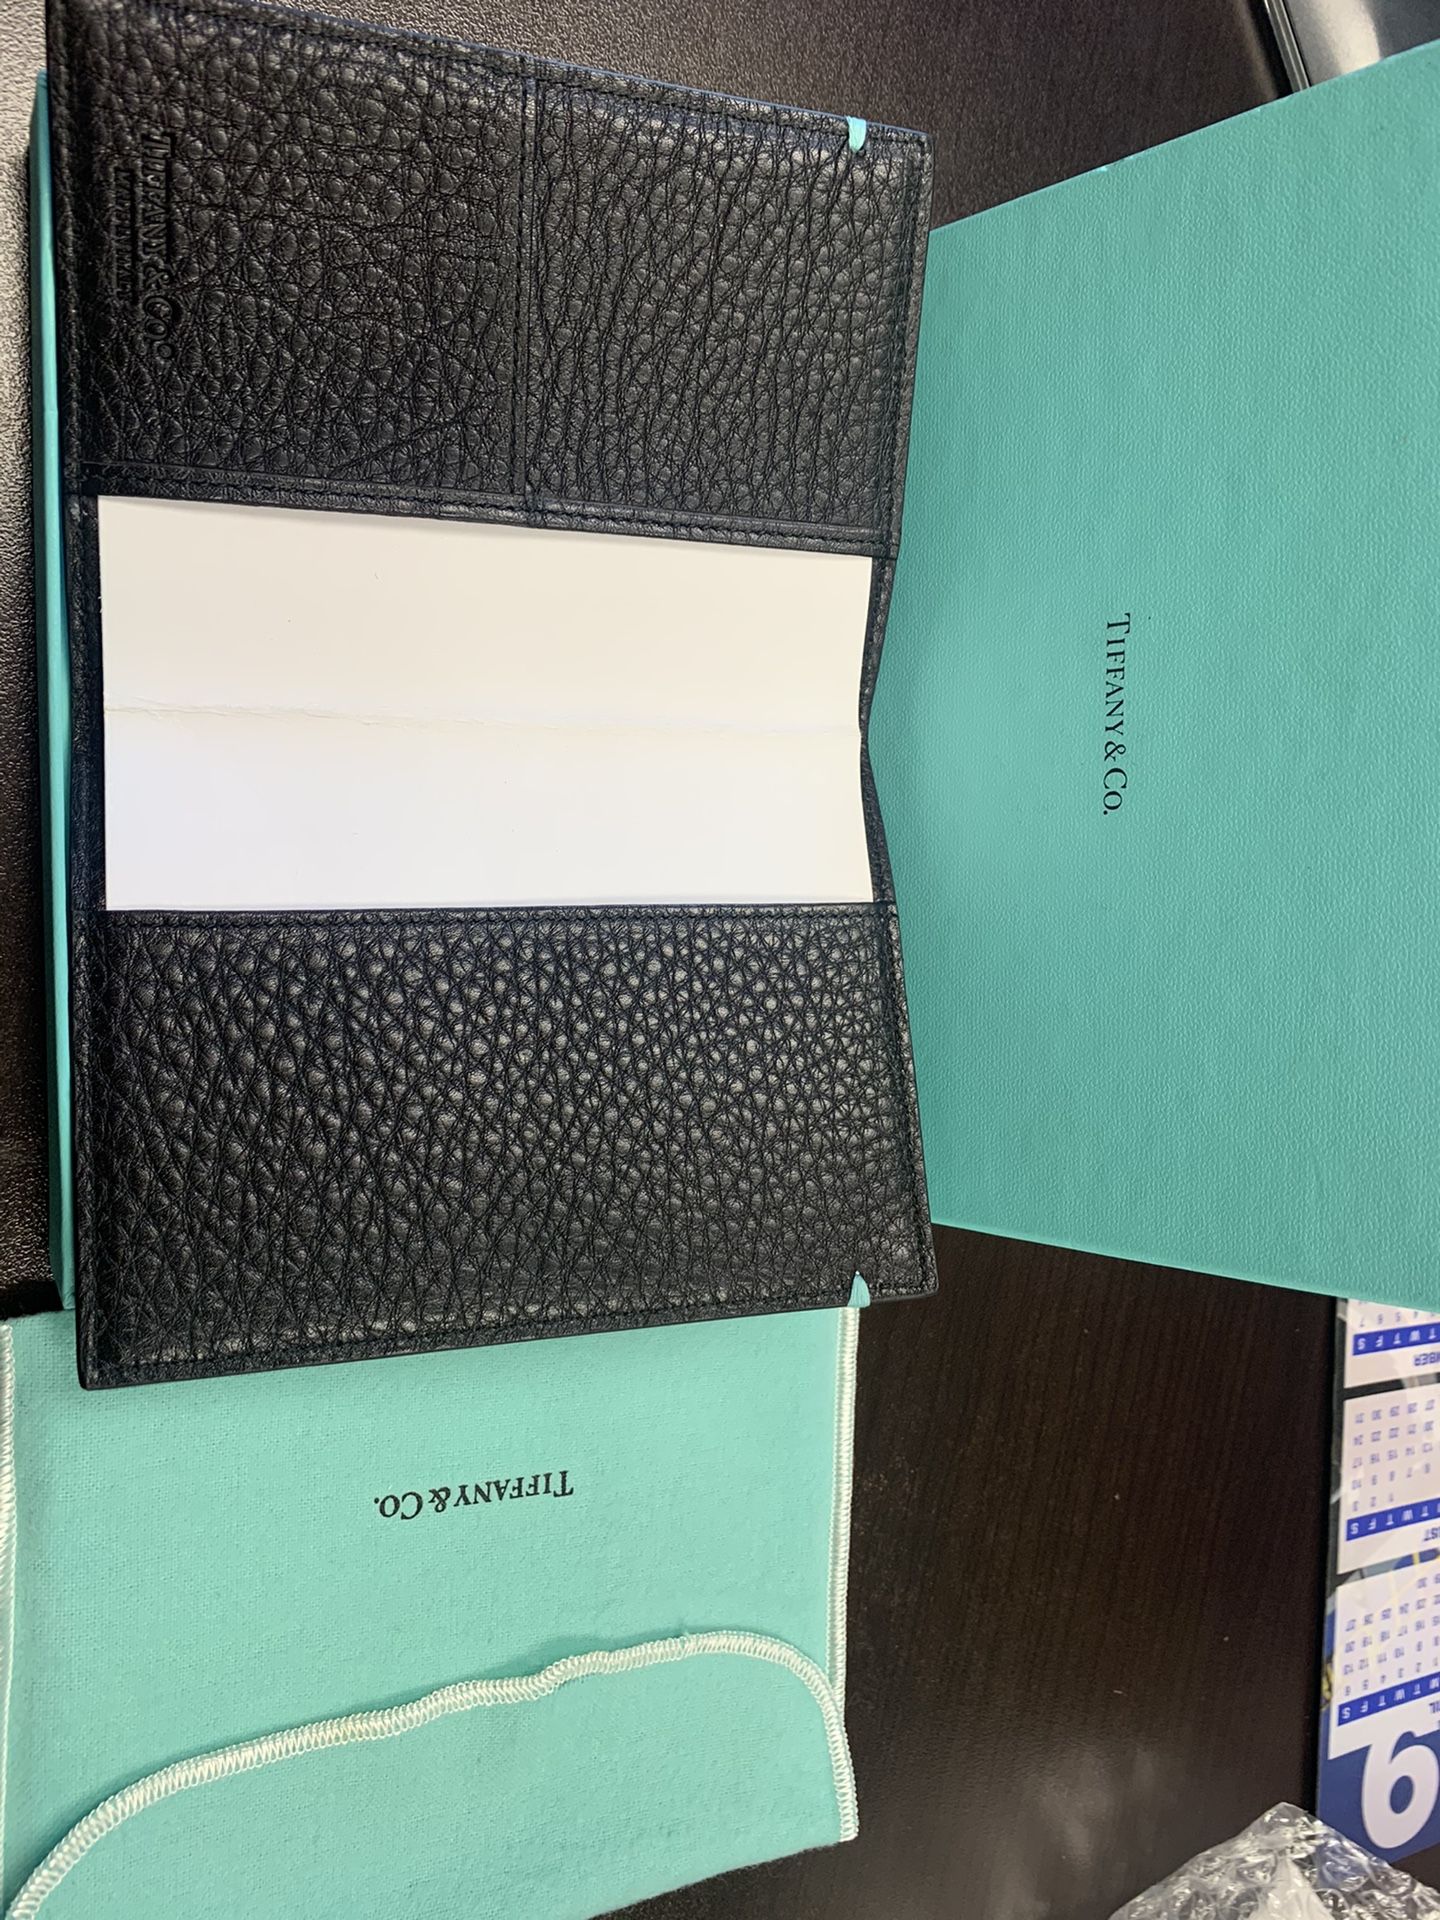 Tiffany & Co. Agenda / Passport Cover